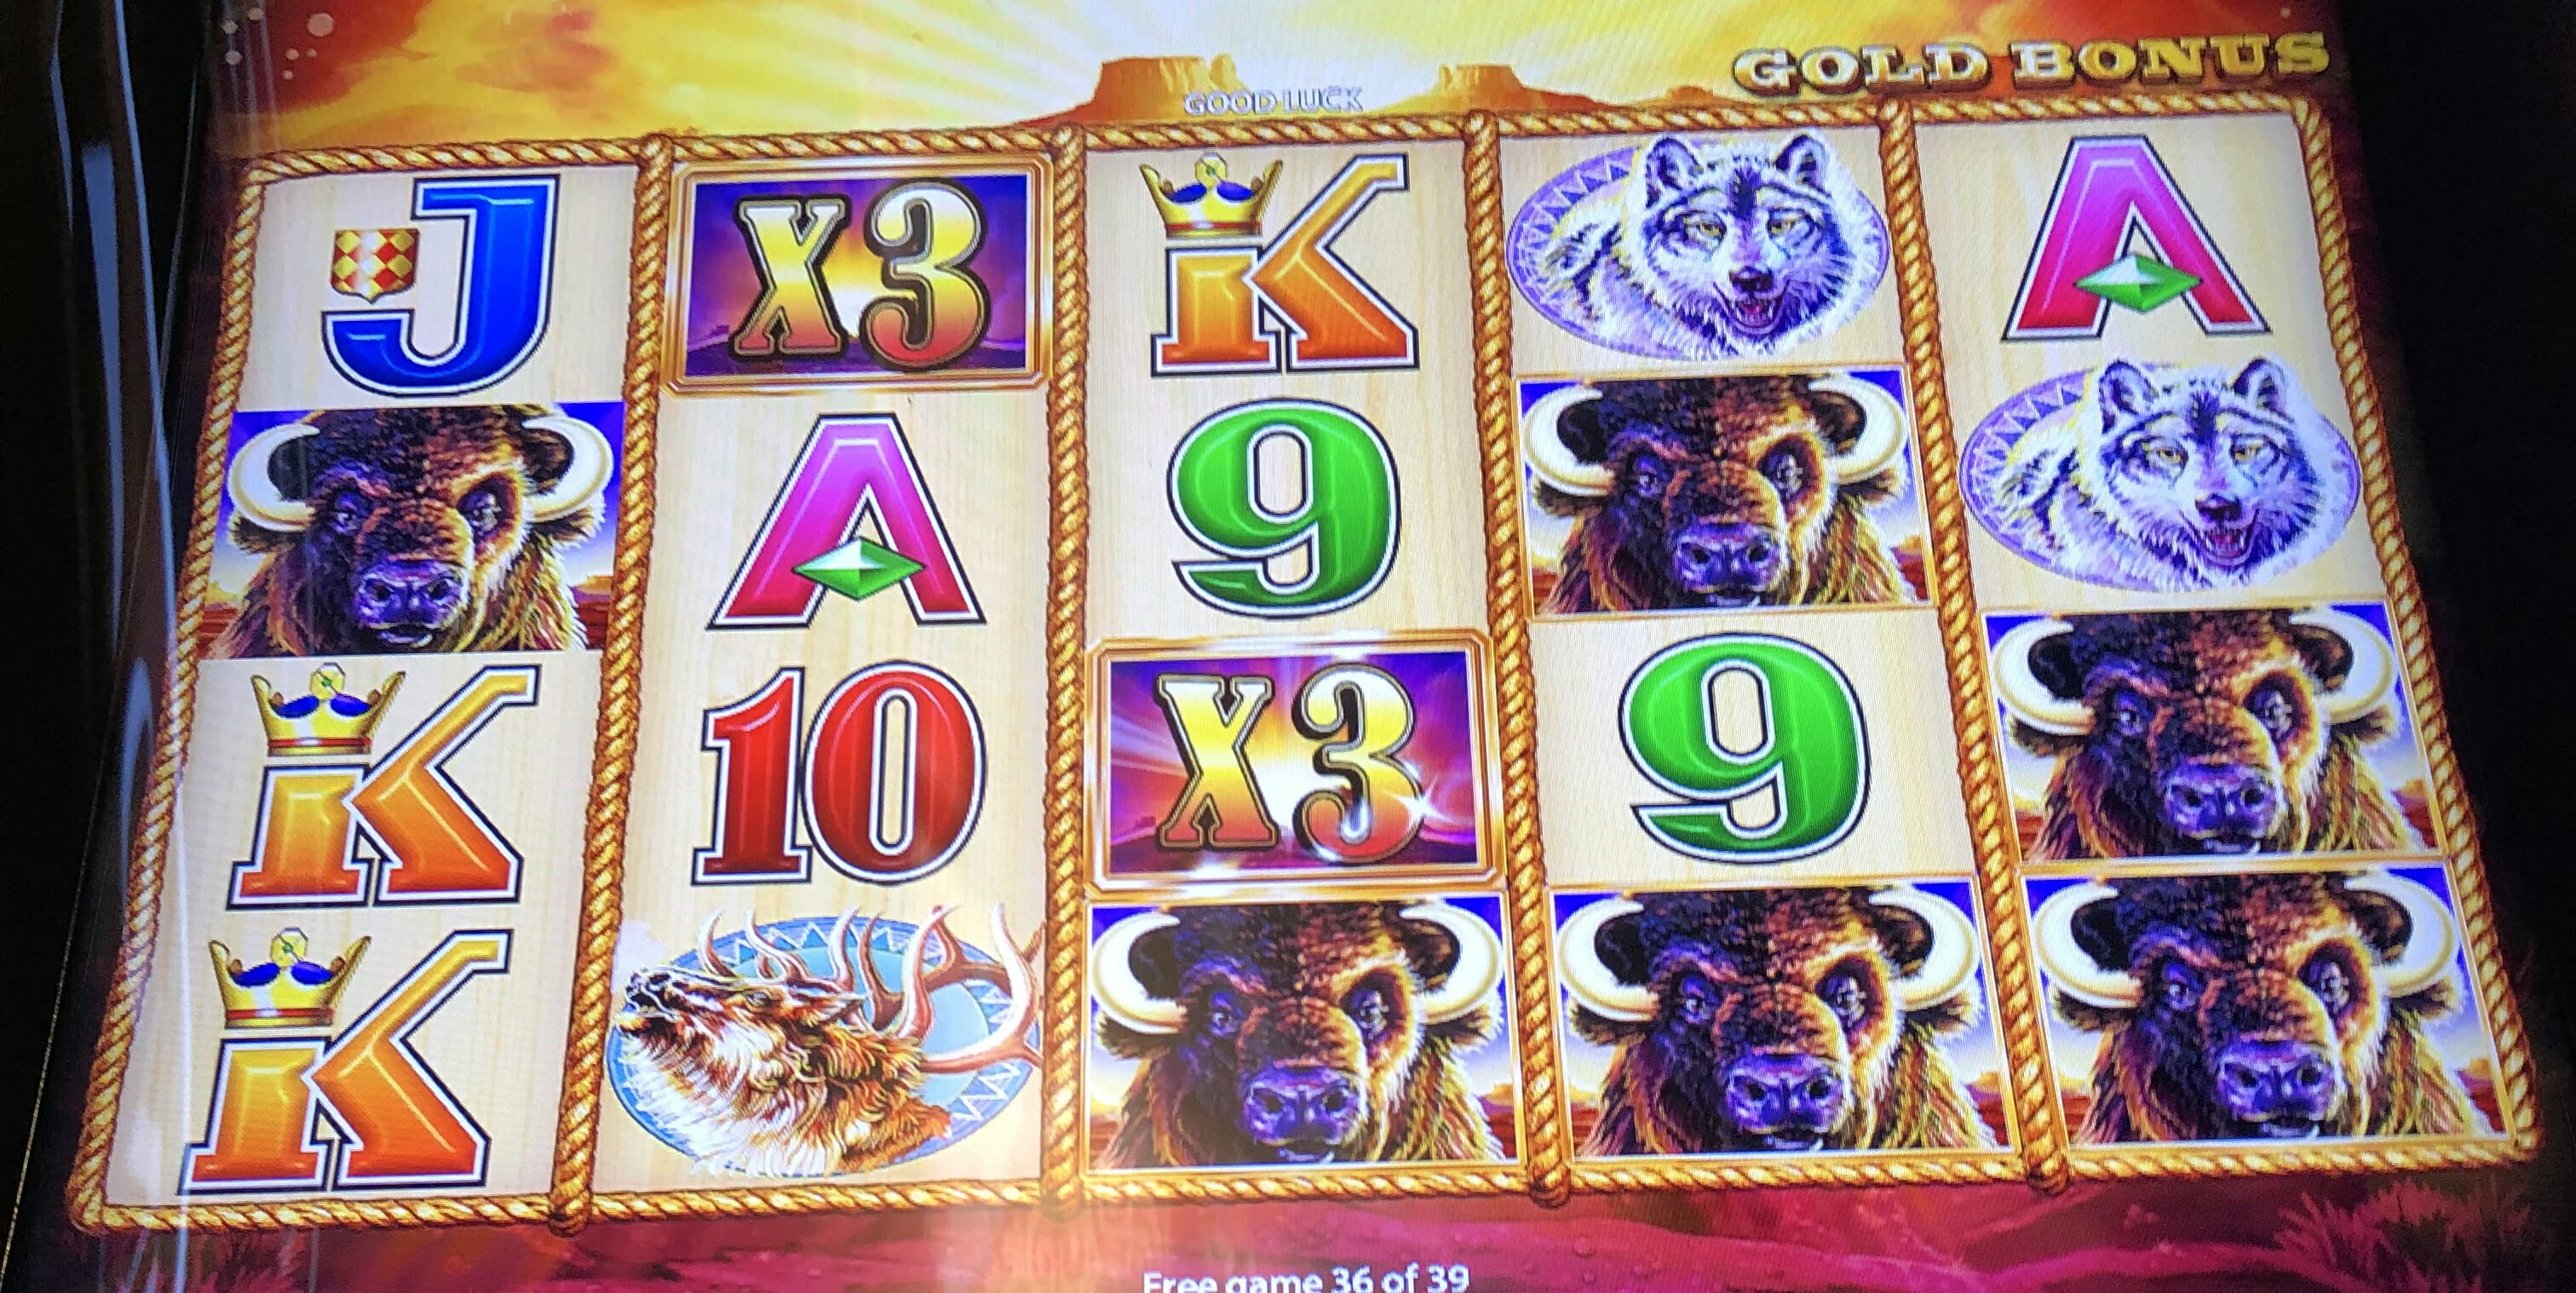 buffalo gold slot machine app